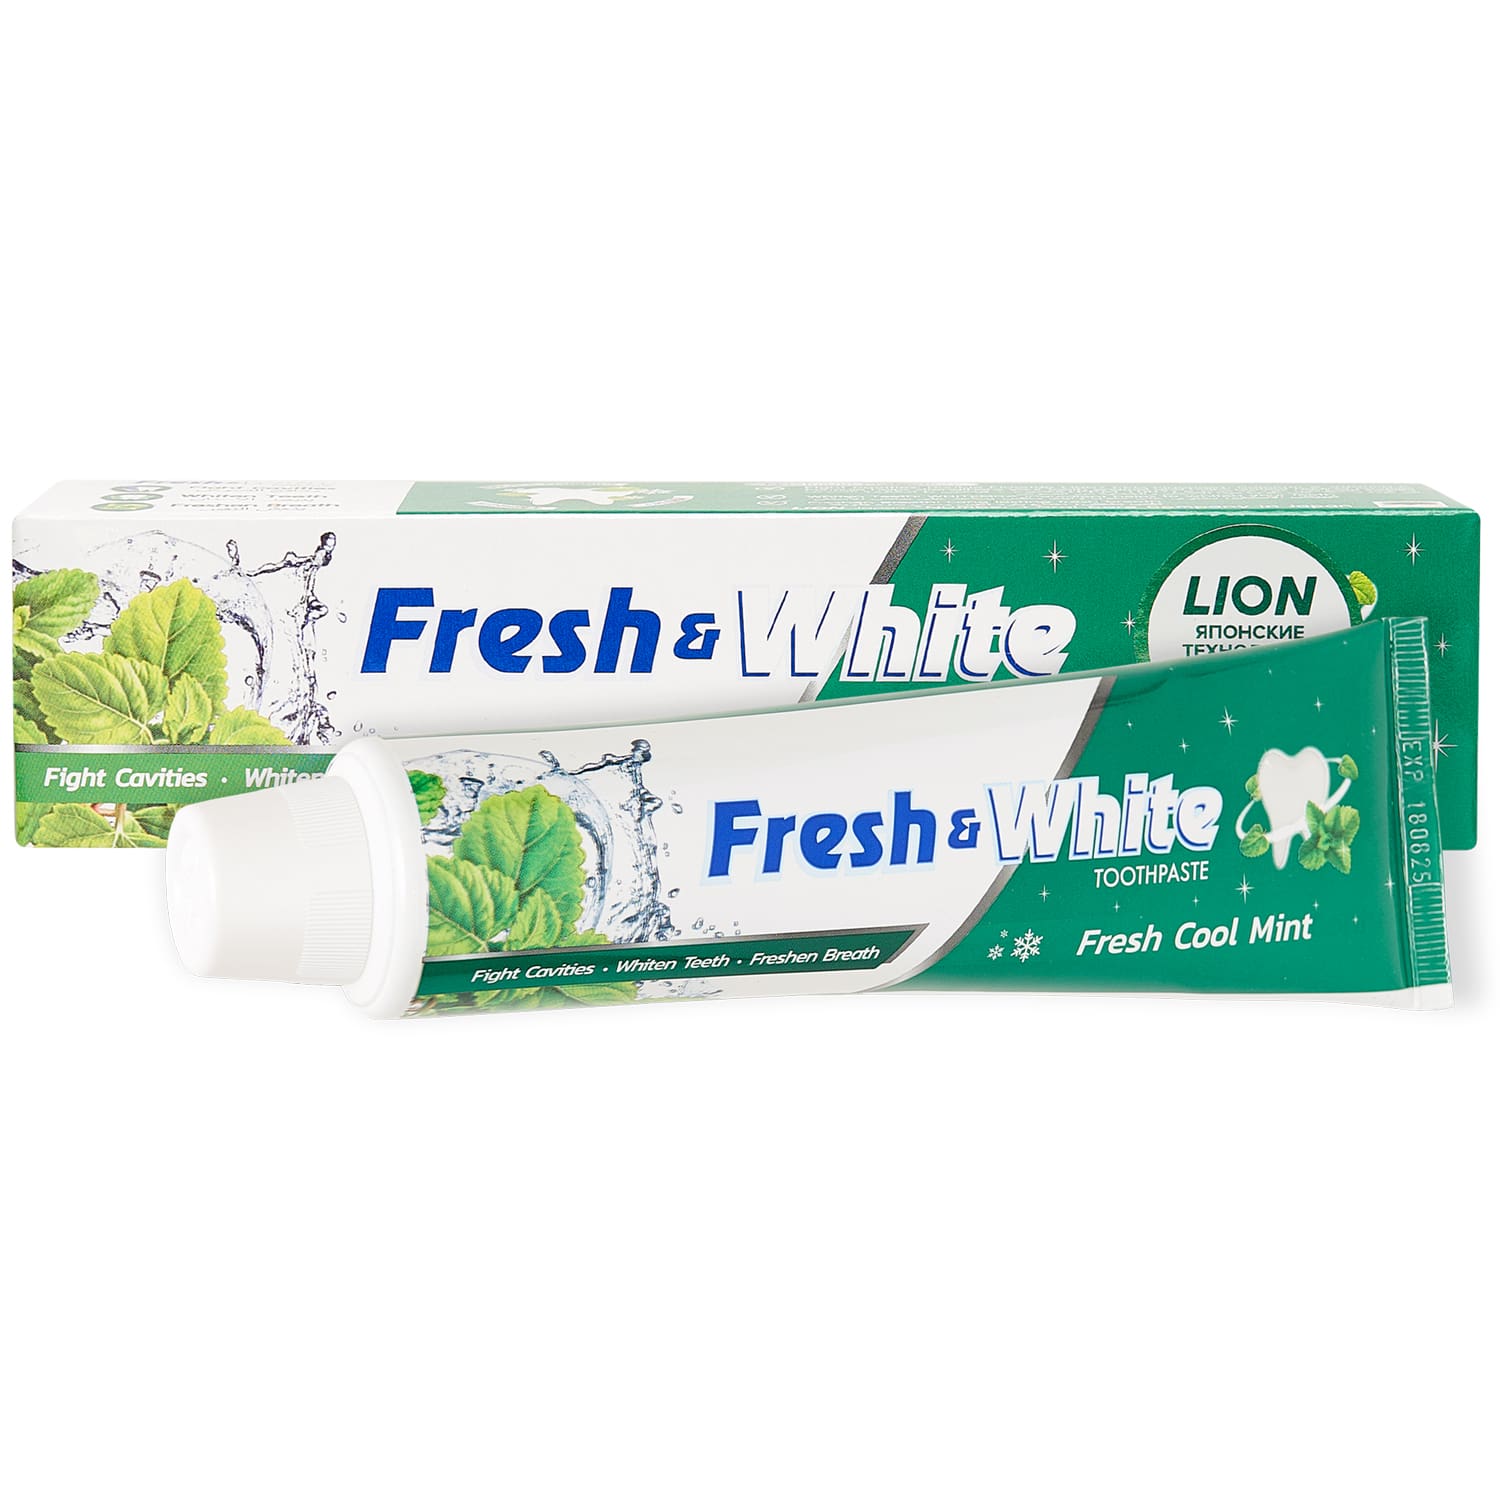 Lion Thailand Зубная паста для защиты от кариеса Прохладная мята, 160 г (Lion Thailand, Fresh & White) уход за полостью рта president зубная паста white